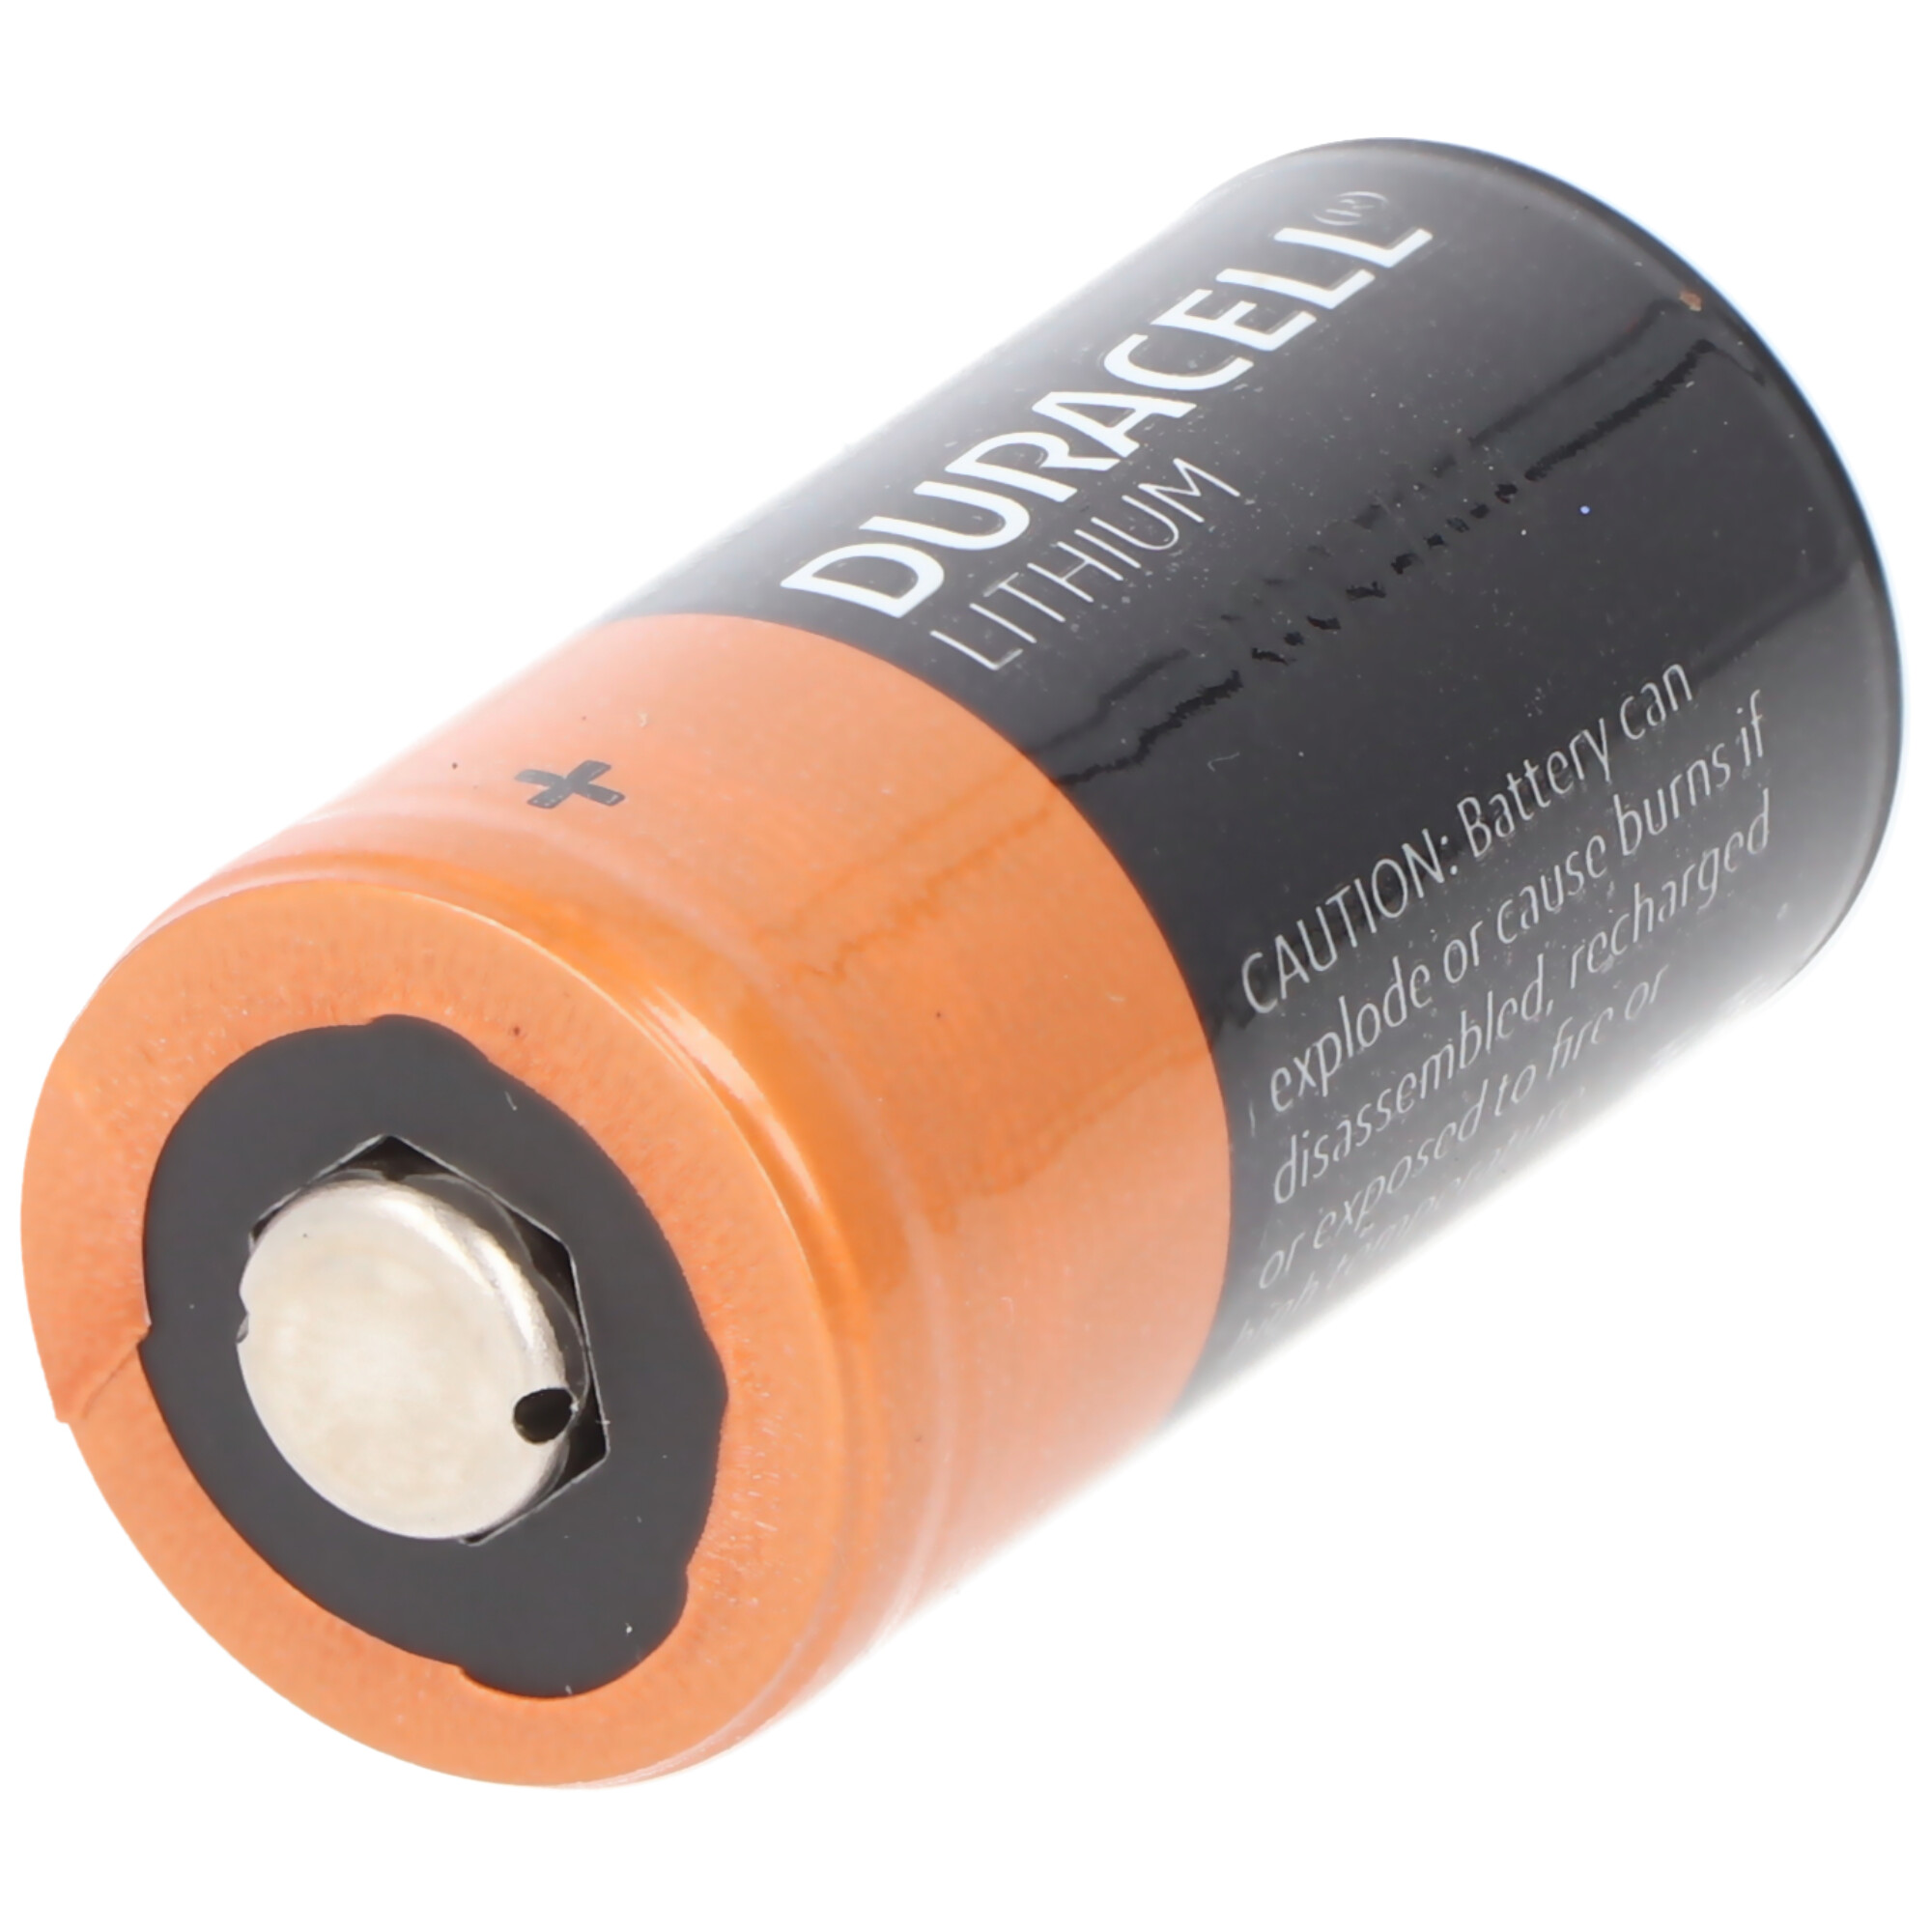 10x Duracell CR123A Lithium Batterie, 3V, Photobatterie CR123 A, im praktischen 10er Streifen